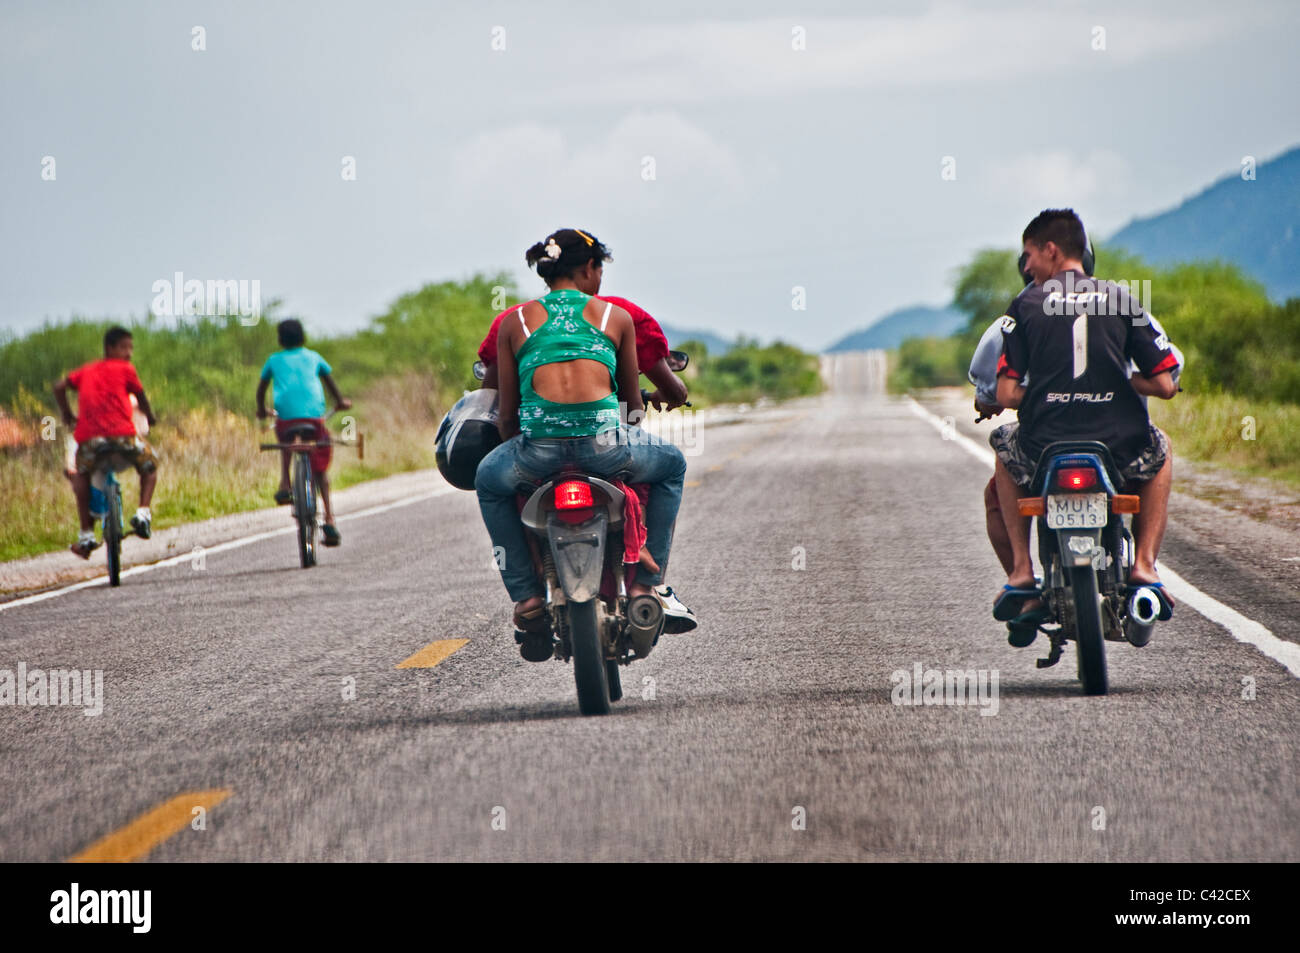 Vélos et motos circulant sur route ouverte par le biais de campagnes du Brésil Pernambuco Brésil Banque D'Images